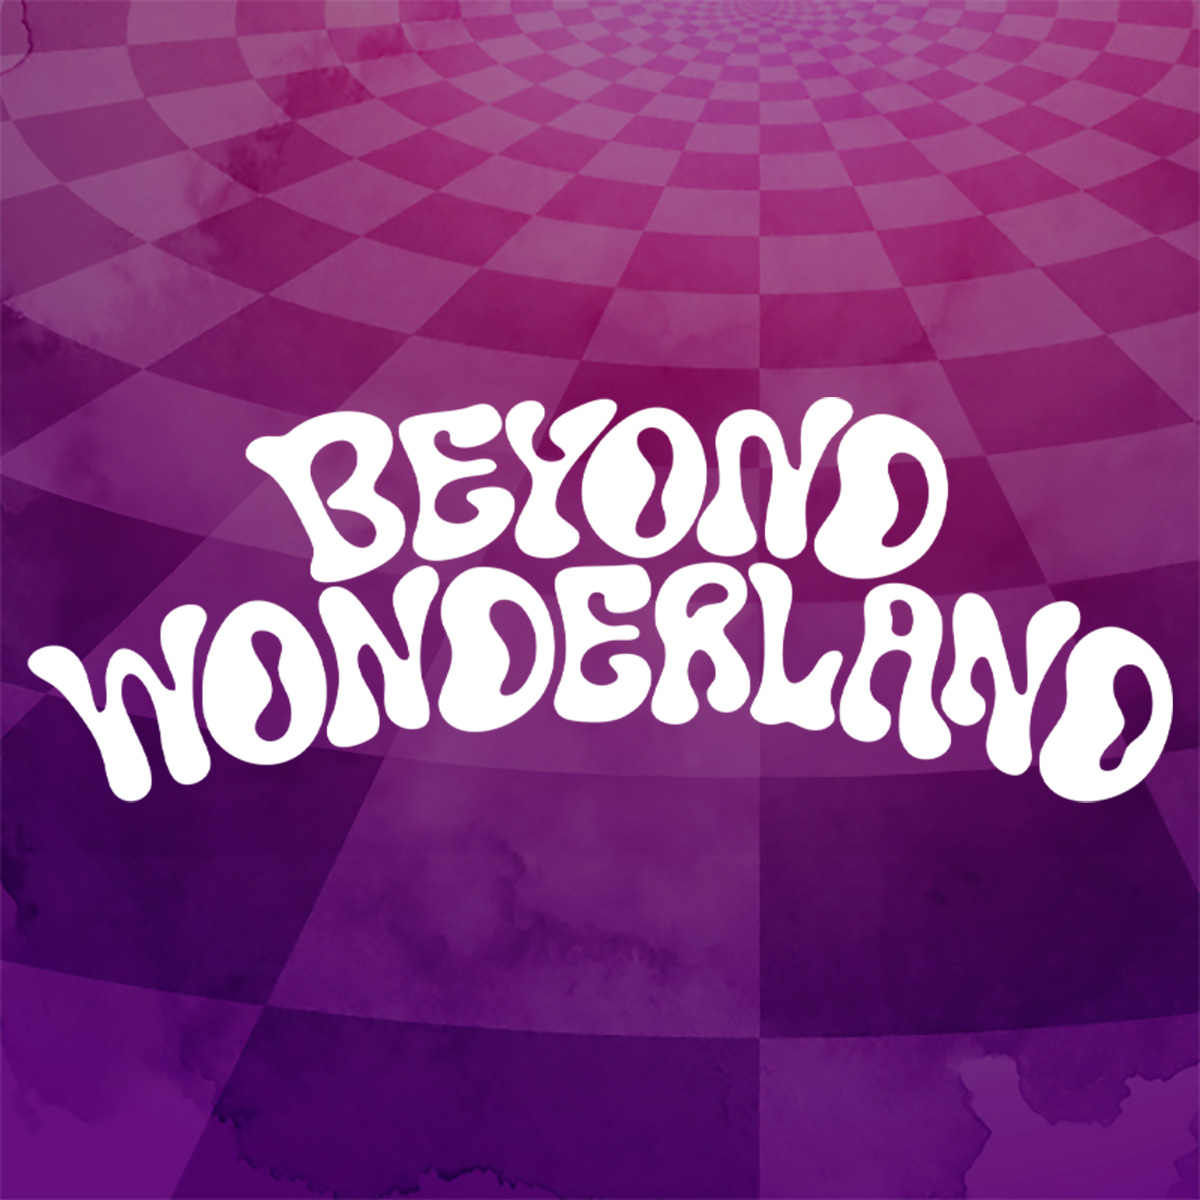 Highlights From Beyond Wonderland 2022, an Alice in Wonderland